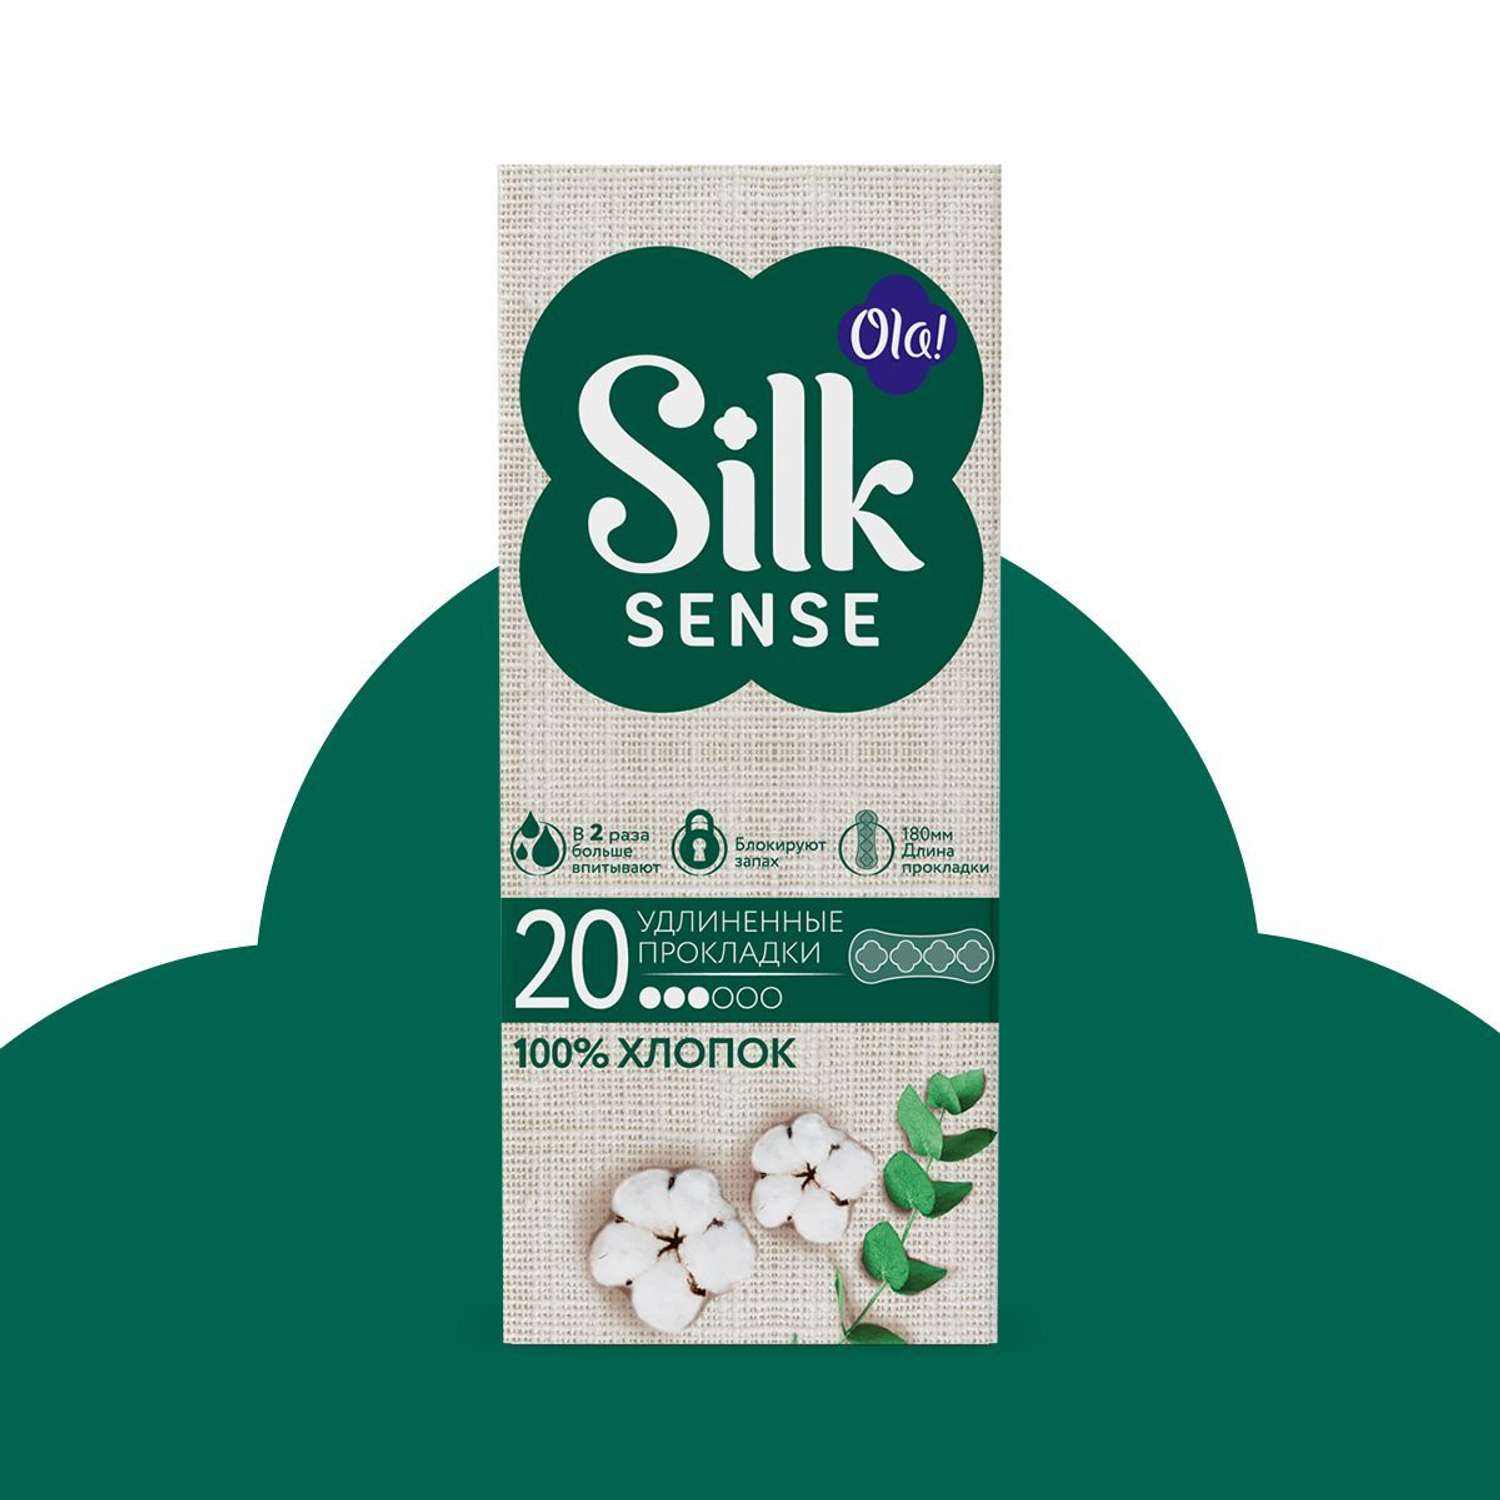 Ежедневные прокладки Ola! Silk Sense удлиненные с хлопковой поверхностью 20 шт - фото 2